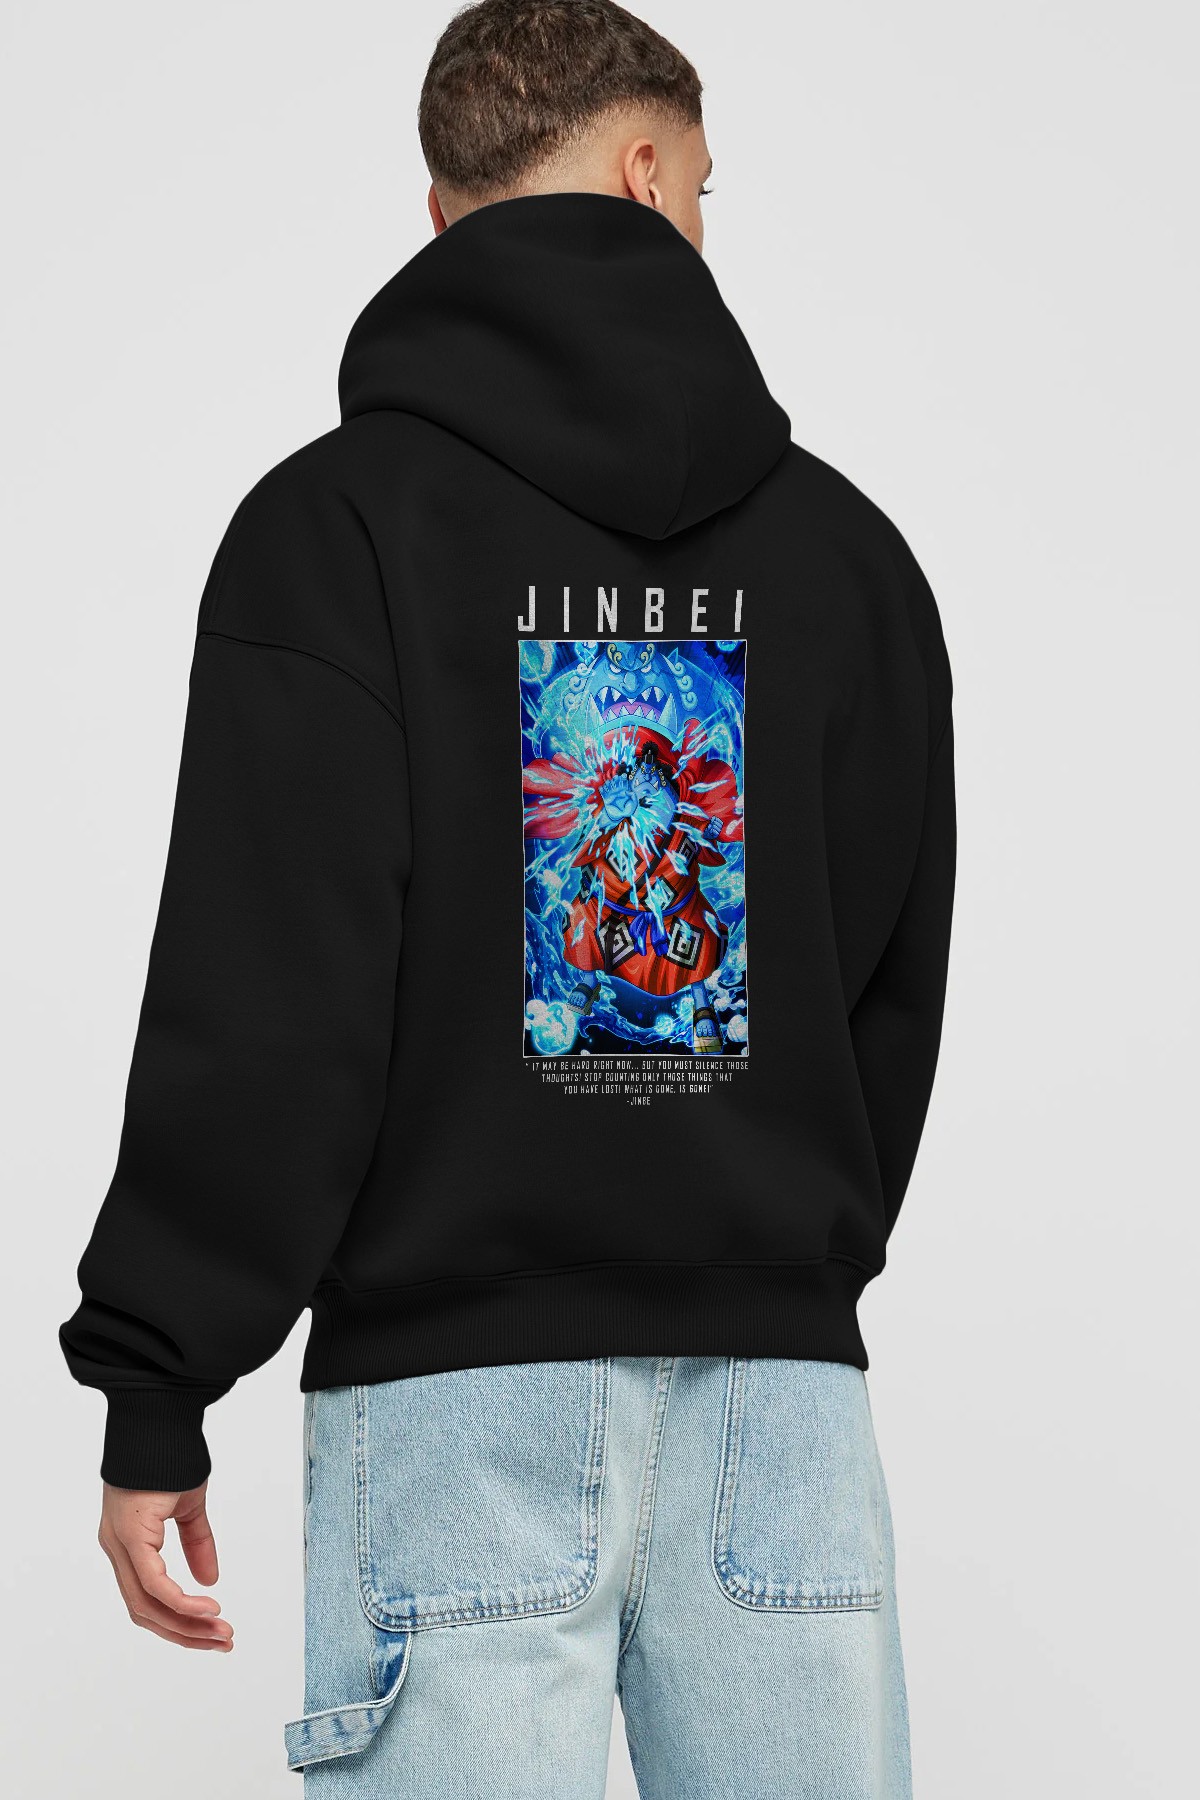 Jinbei Anime Arka Baskılı Hoodie Oversize Kapüşonlu Sweatshirt Erkek Kadın Unisex